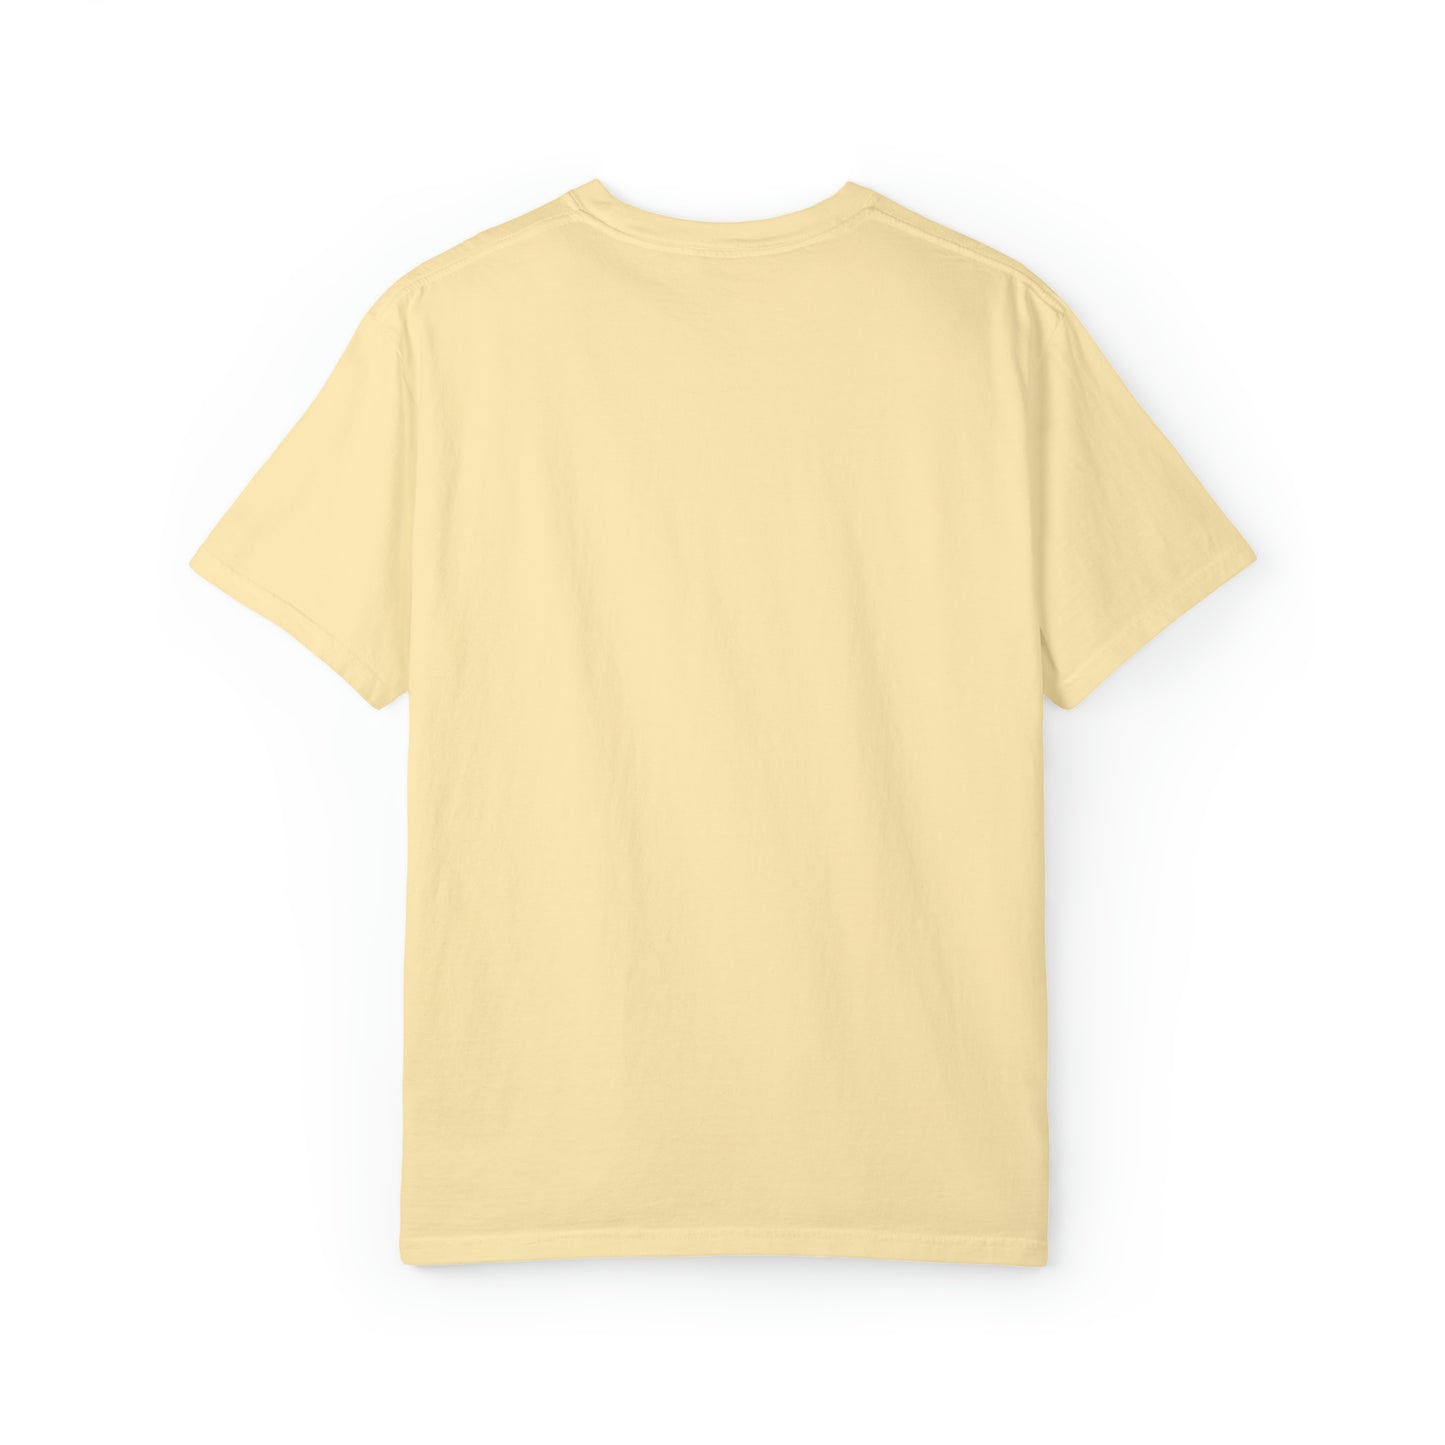 Kendrick Lamar - DNA - Unisex Comfort Colors T-shirt